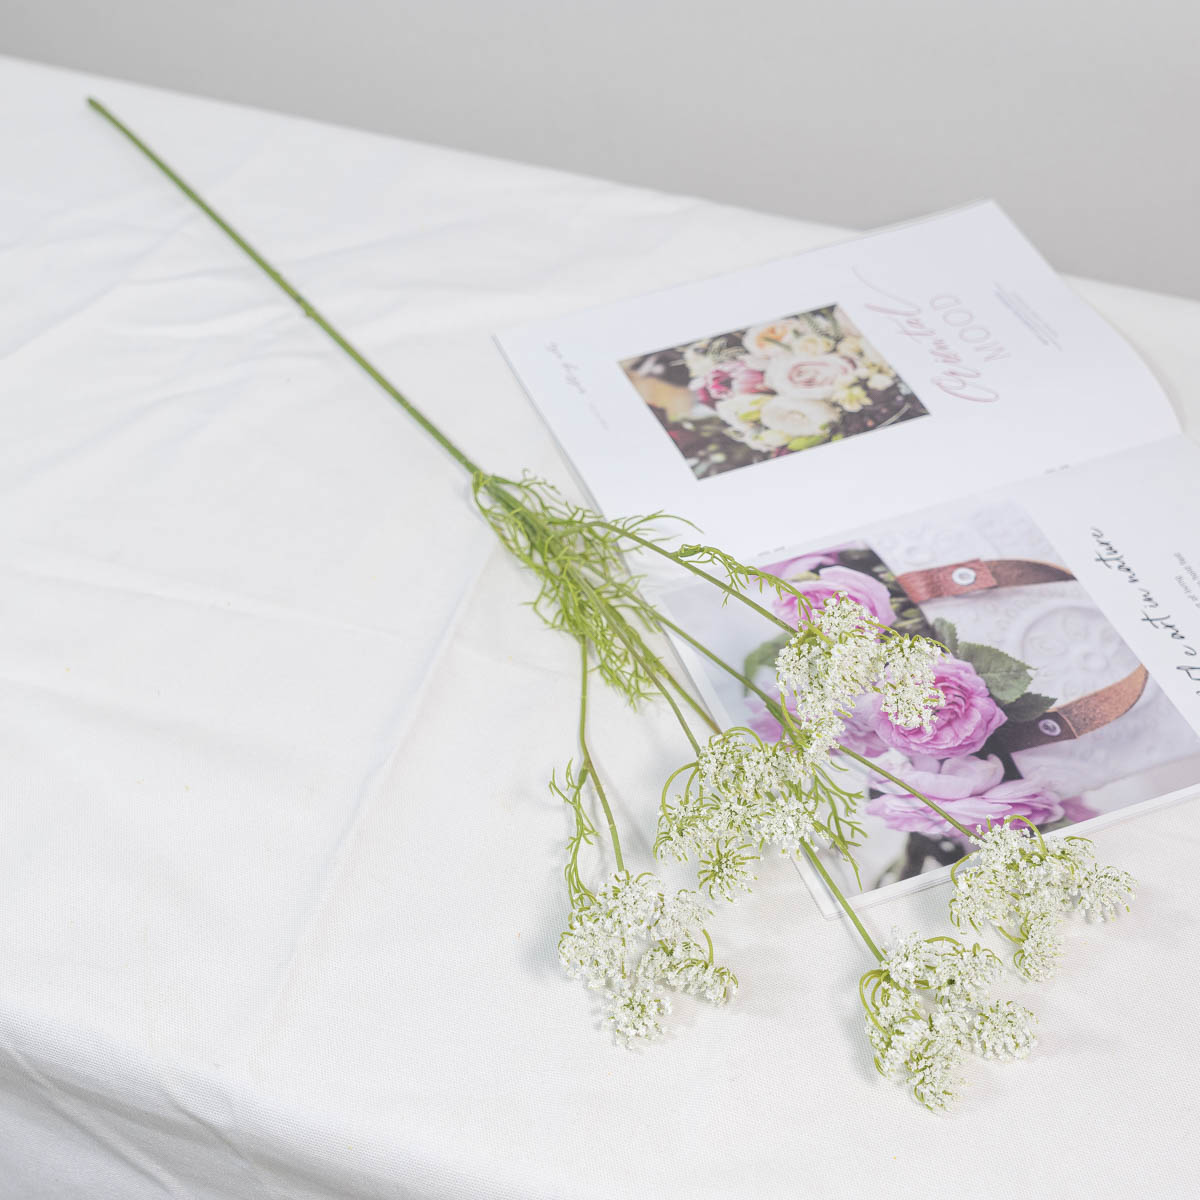 실크플라워 실크플라워 조화꽃 레이스플라워 가지 80cm 크림 테이블에 놓은 사진